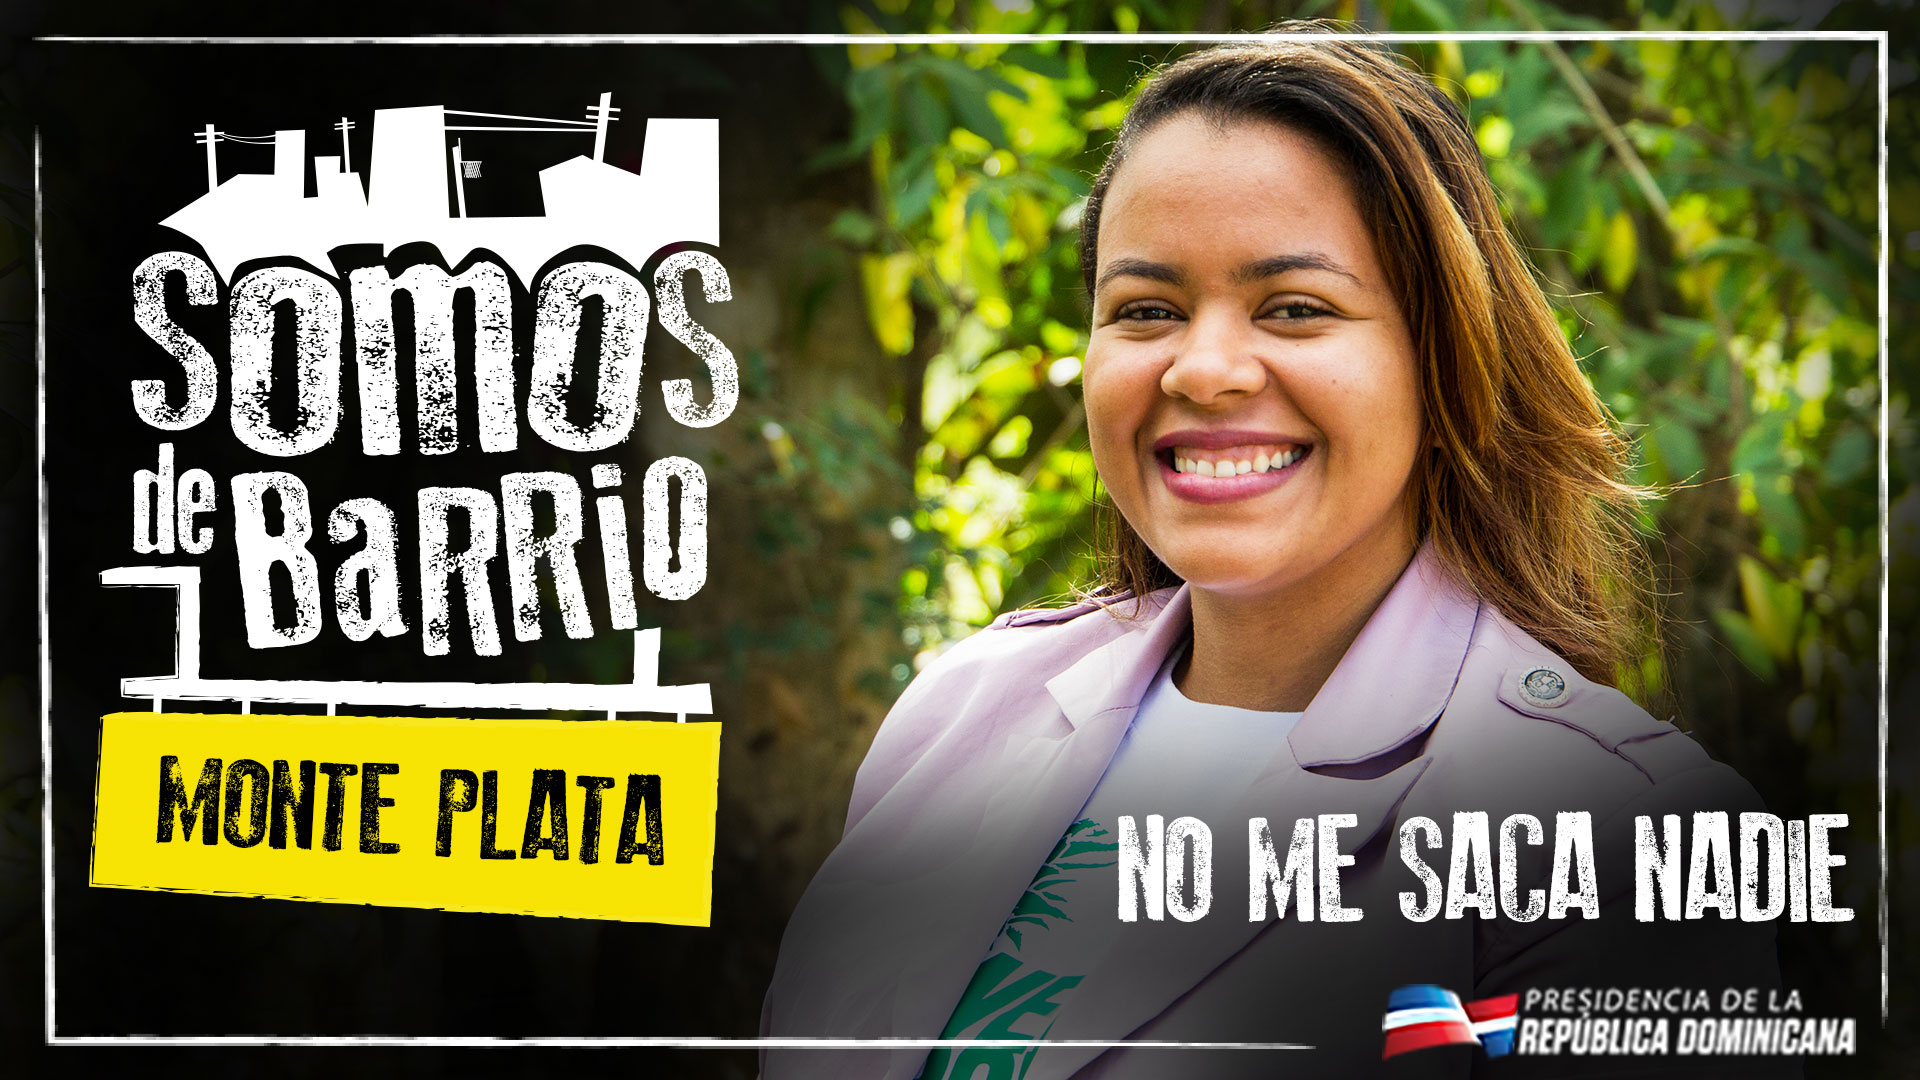 REPÚBLICA DOMINICANA: Monte Plata vive los cambios. De este pueblo no me saca nadie, declara sonriente joven productora de piña.